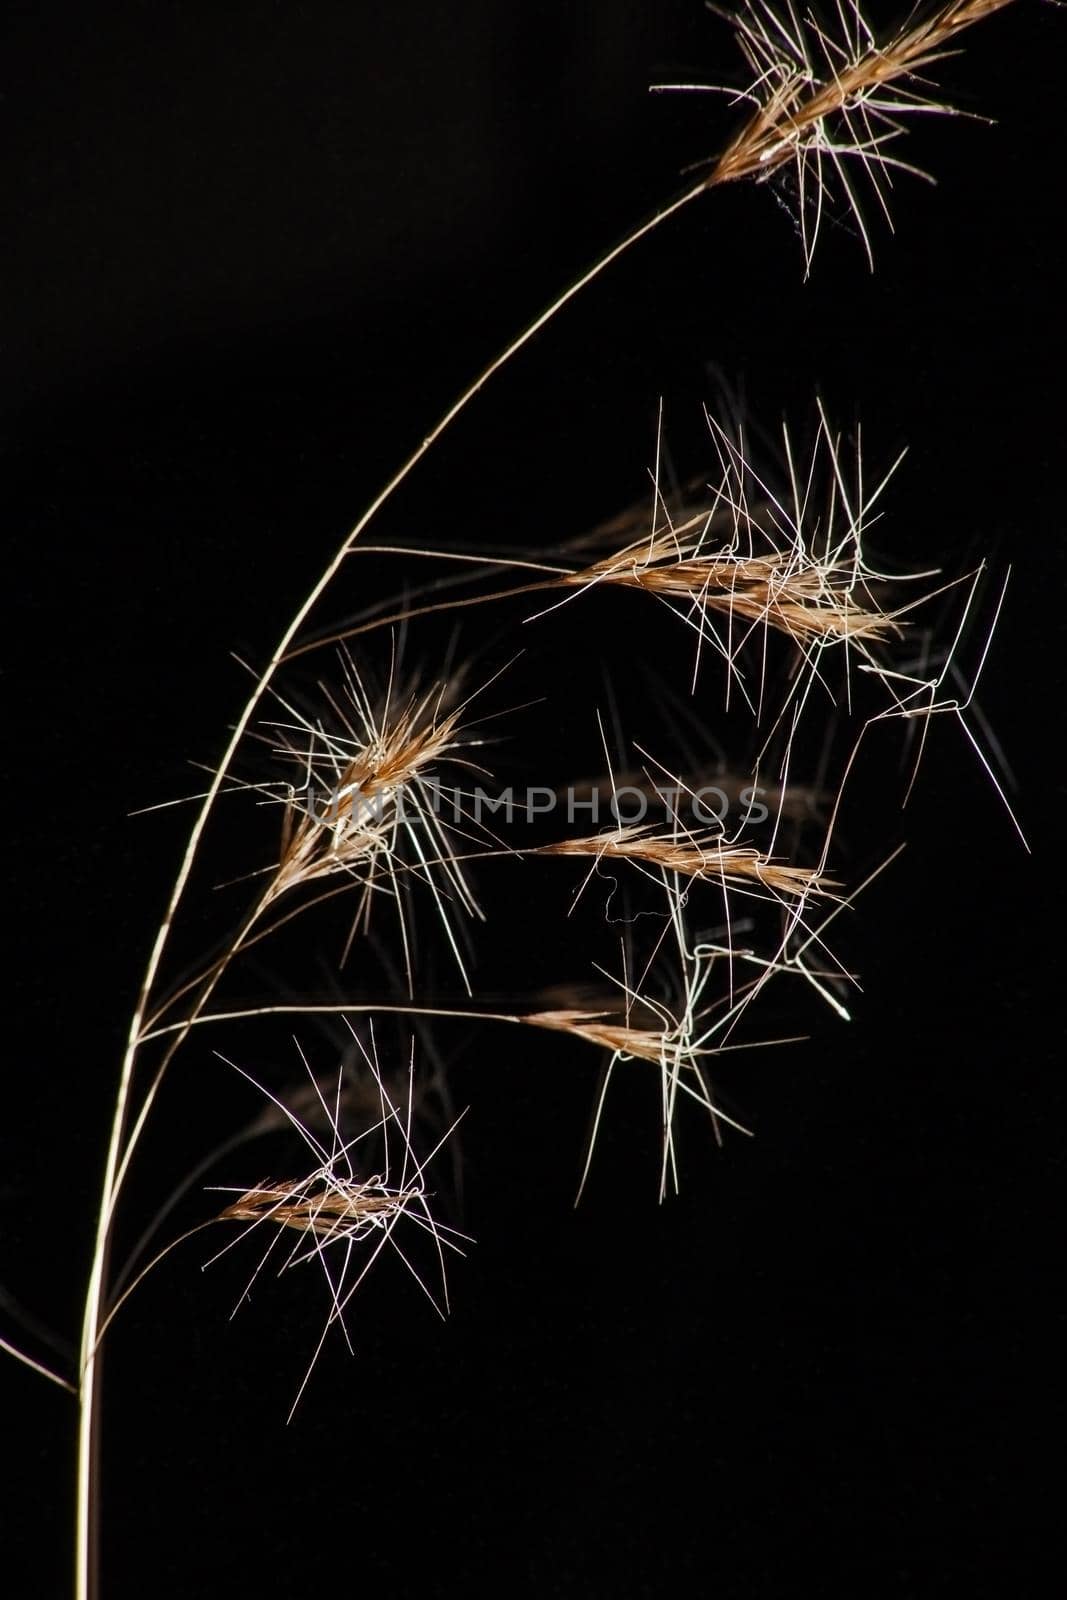 Wiregrass Aristida sp14488 by kobus_peche